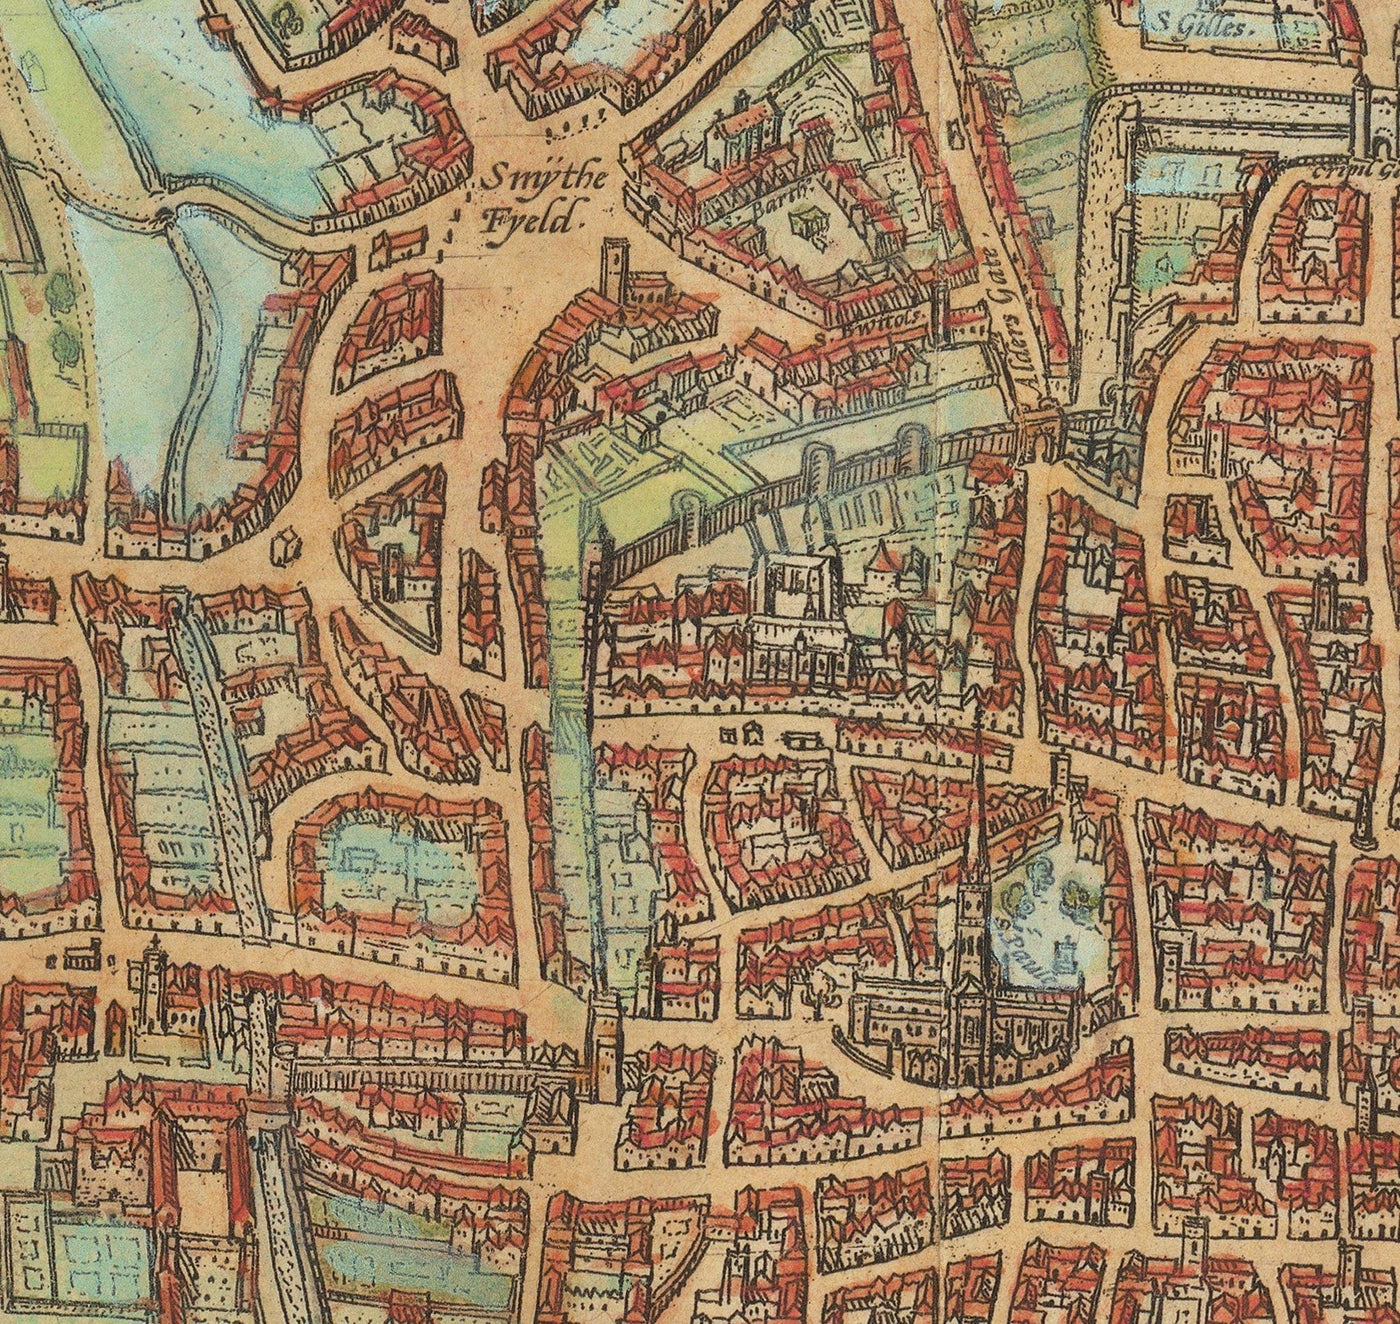 El mapa más antiguo de Londres, 1559 - Ciudad de Londres, Westminster, Southwark